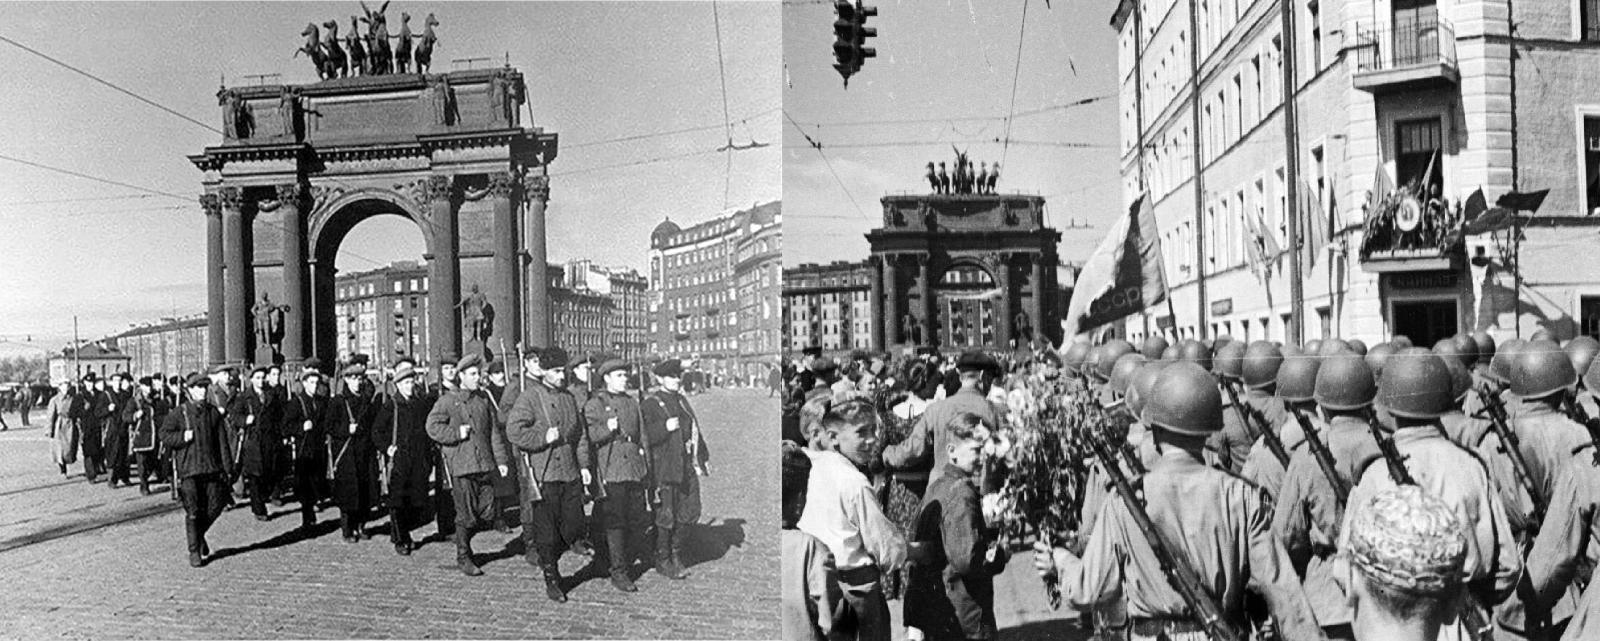 Нарвские ворота в 1941 году и в 1945 году.